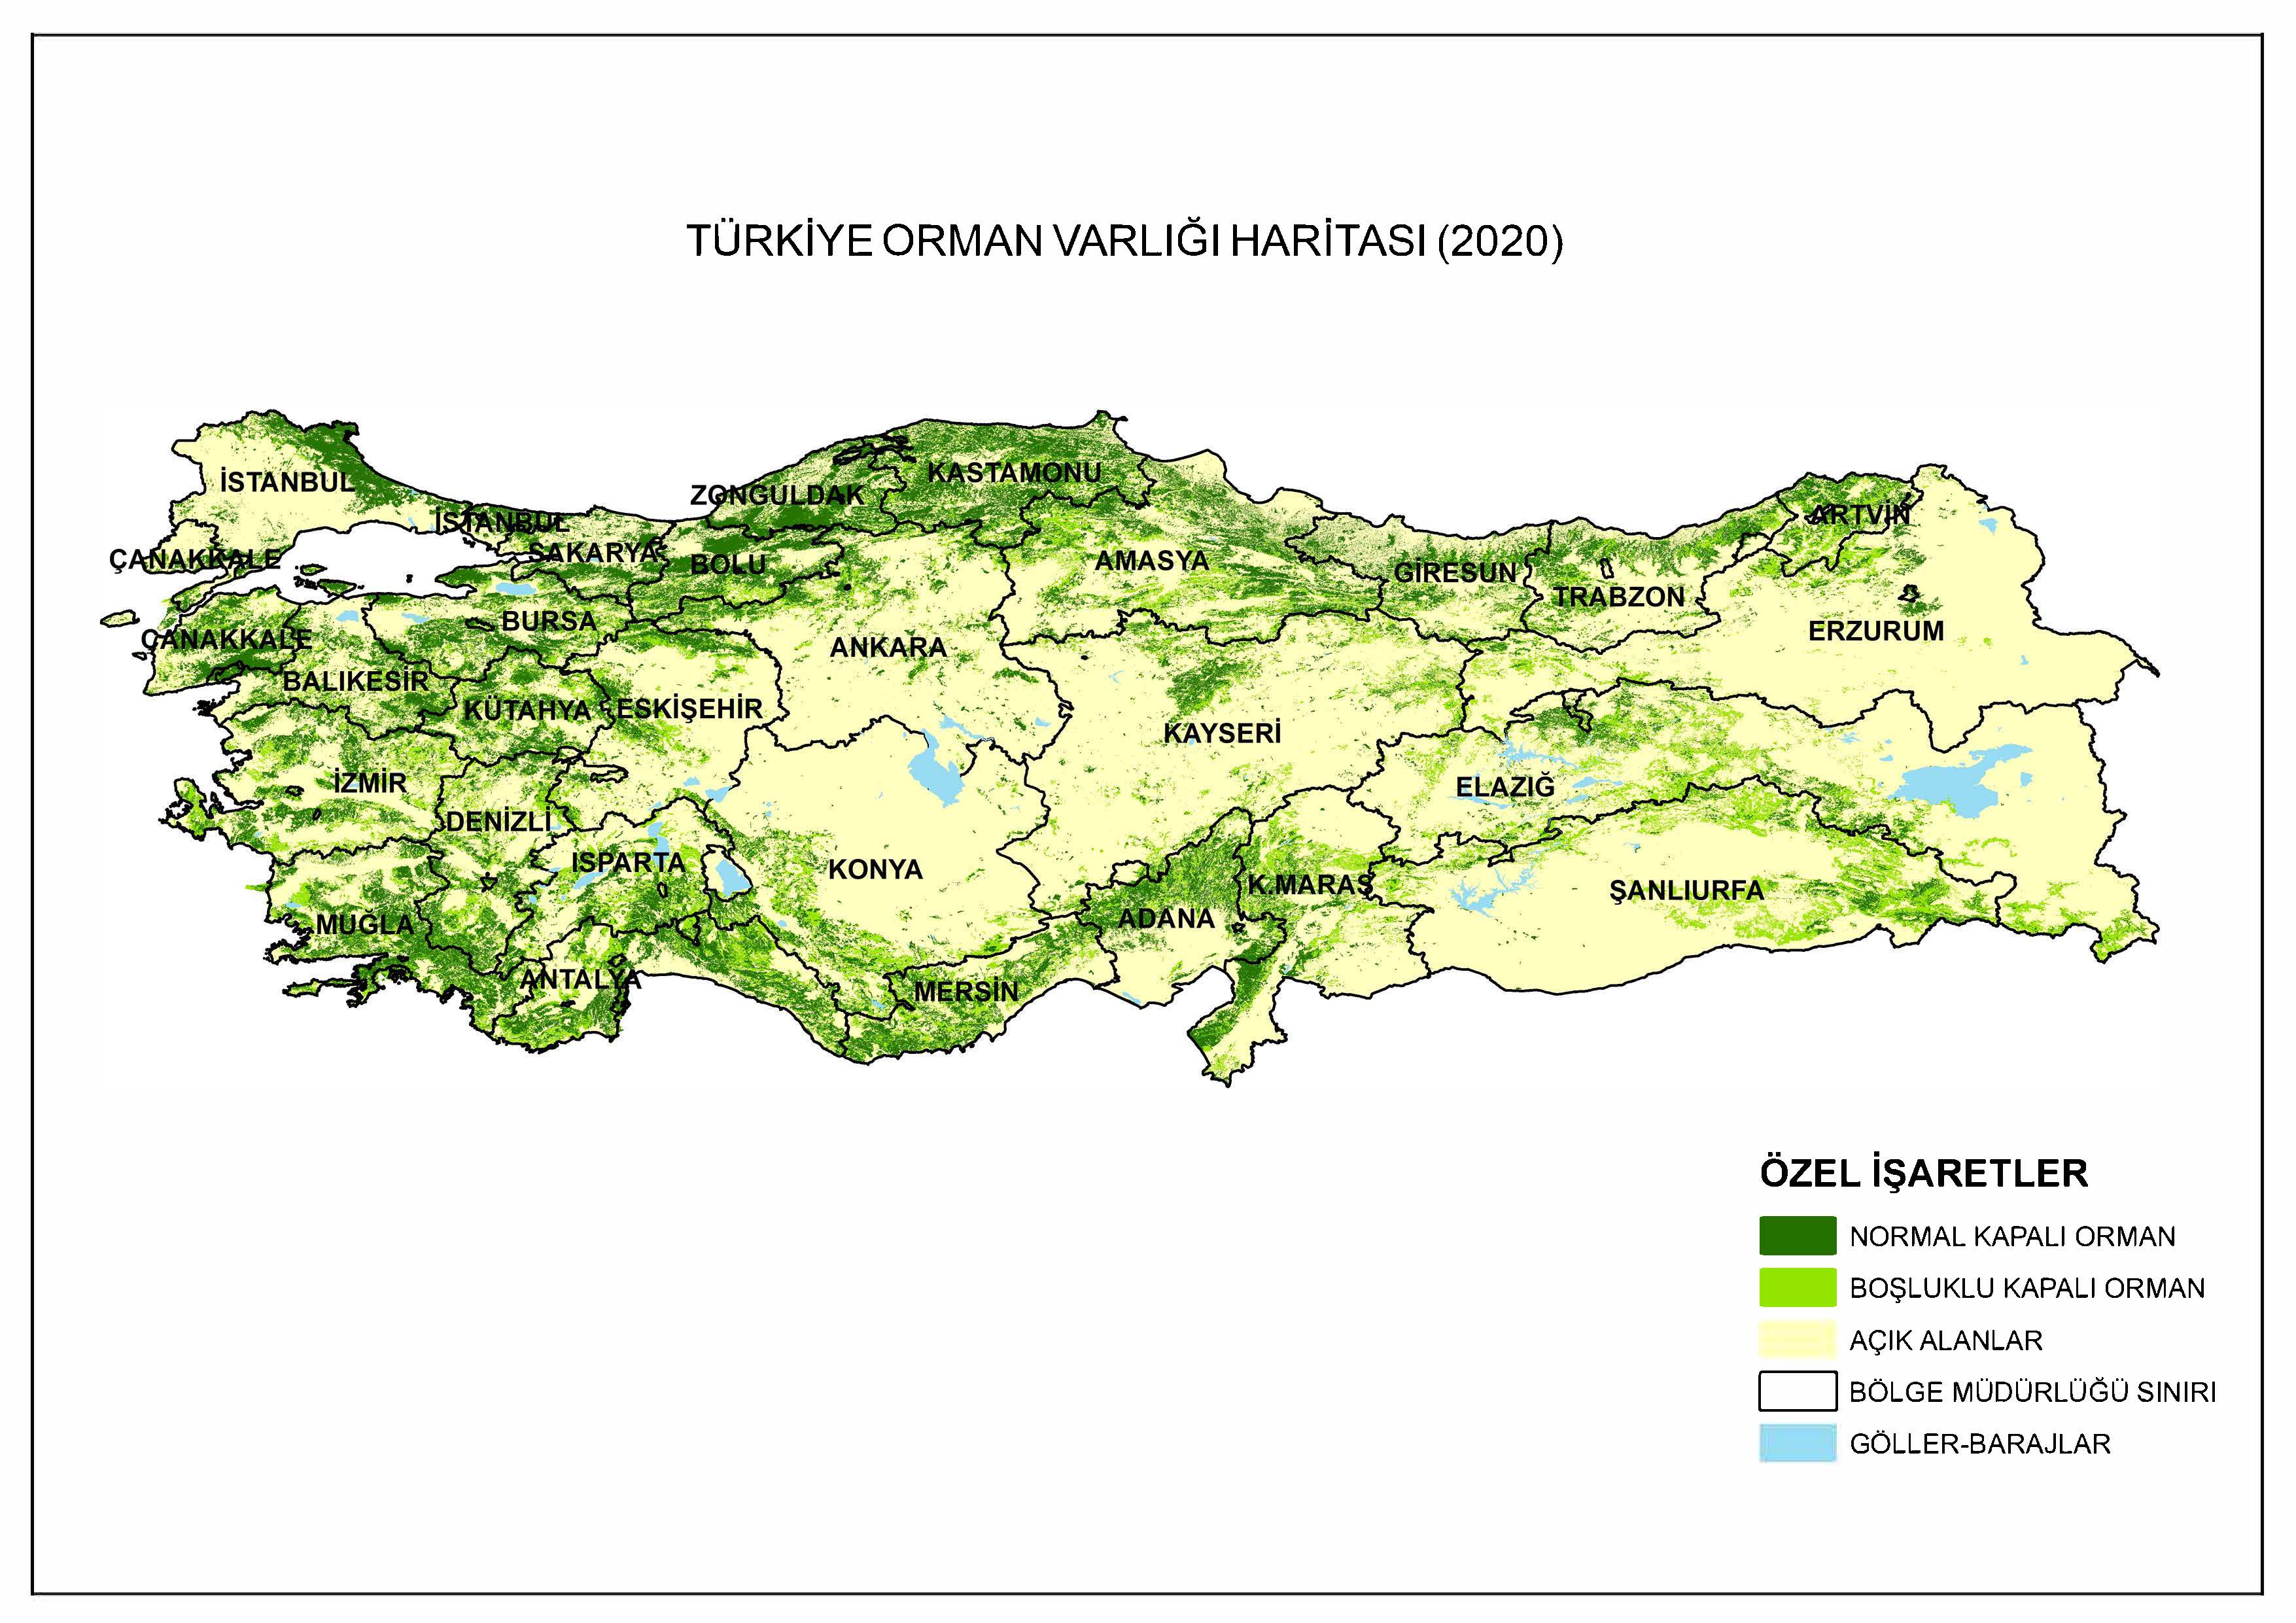 2020 Türkiye Orman Varlığı Haritası